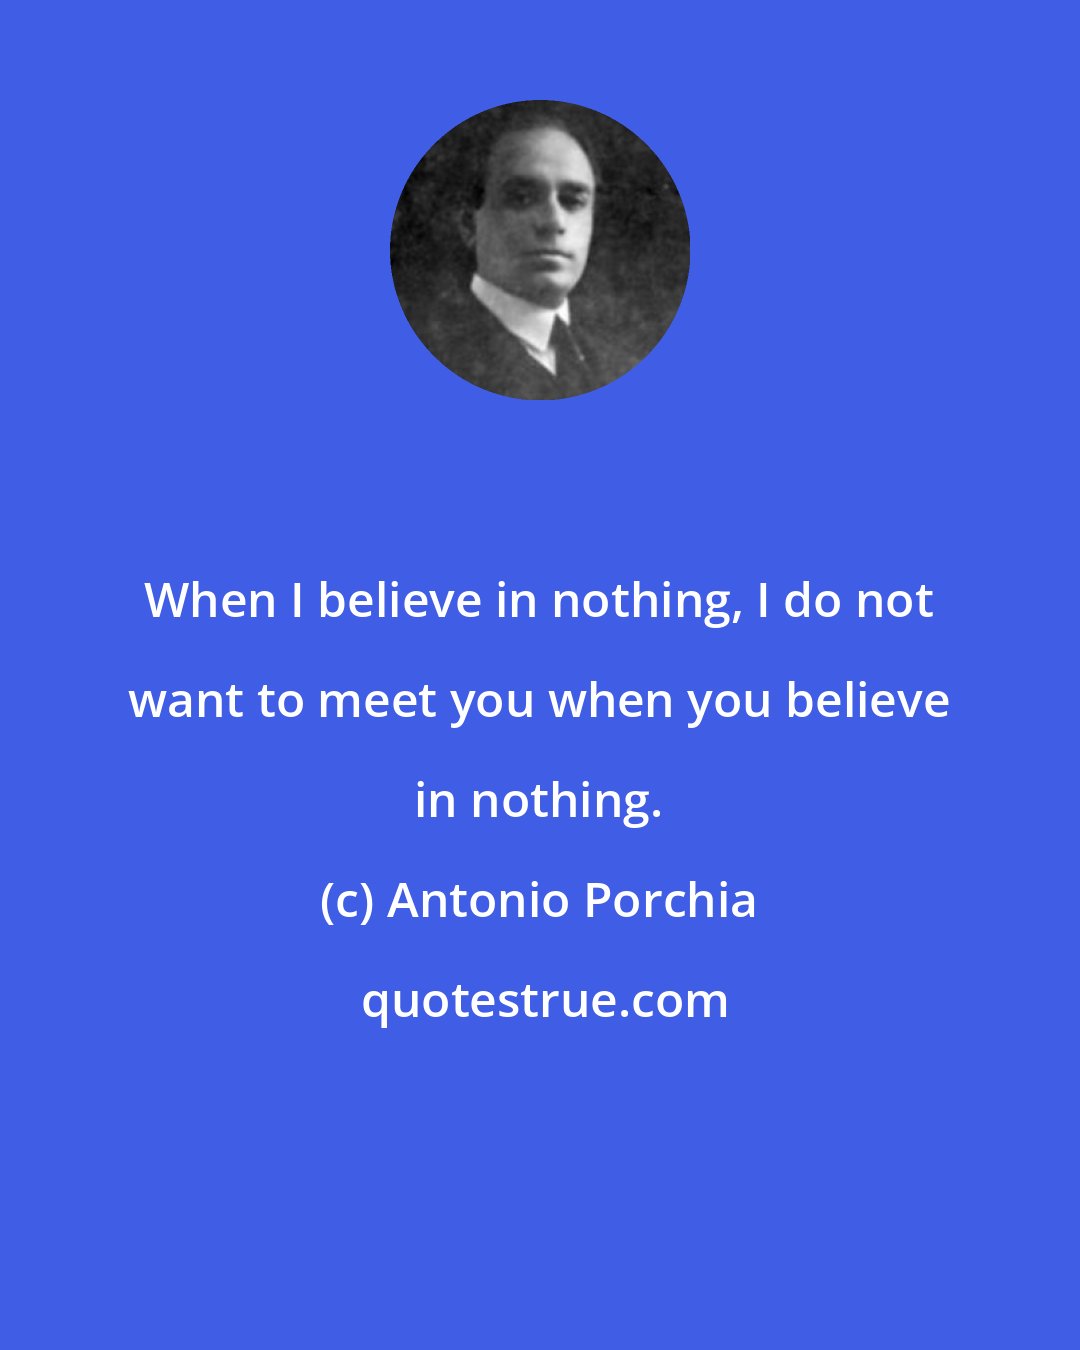 Antonio Porchia: When I believe in nothing, I do not want to meet you when you believe in nothing.